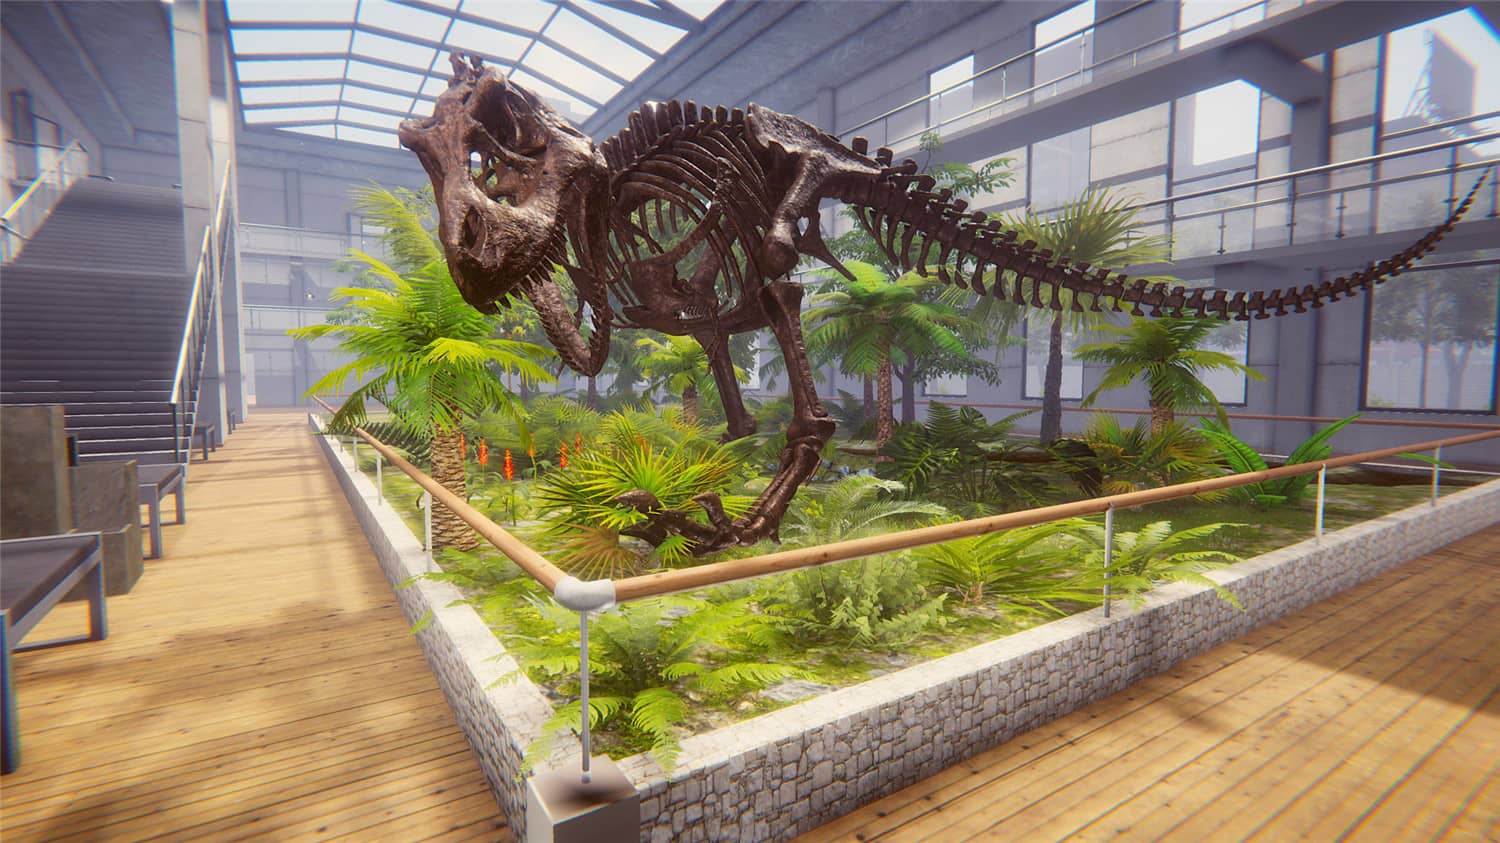 恐龙化石猎人 古生物学家模拟器/Dinosaur Fossil Hunter  第1张